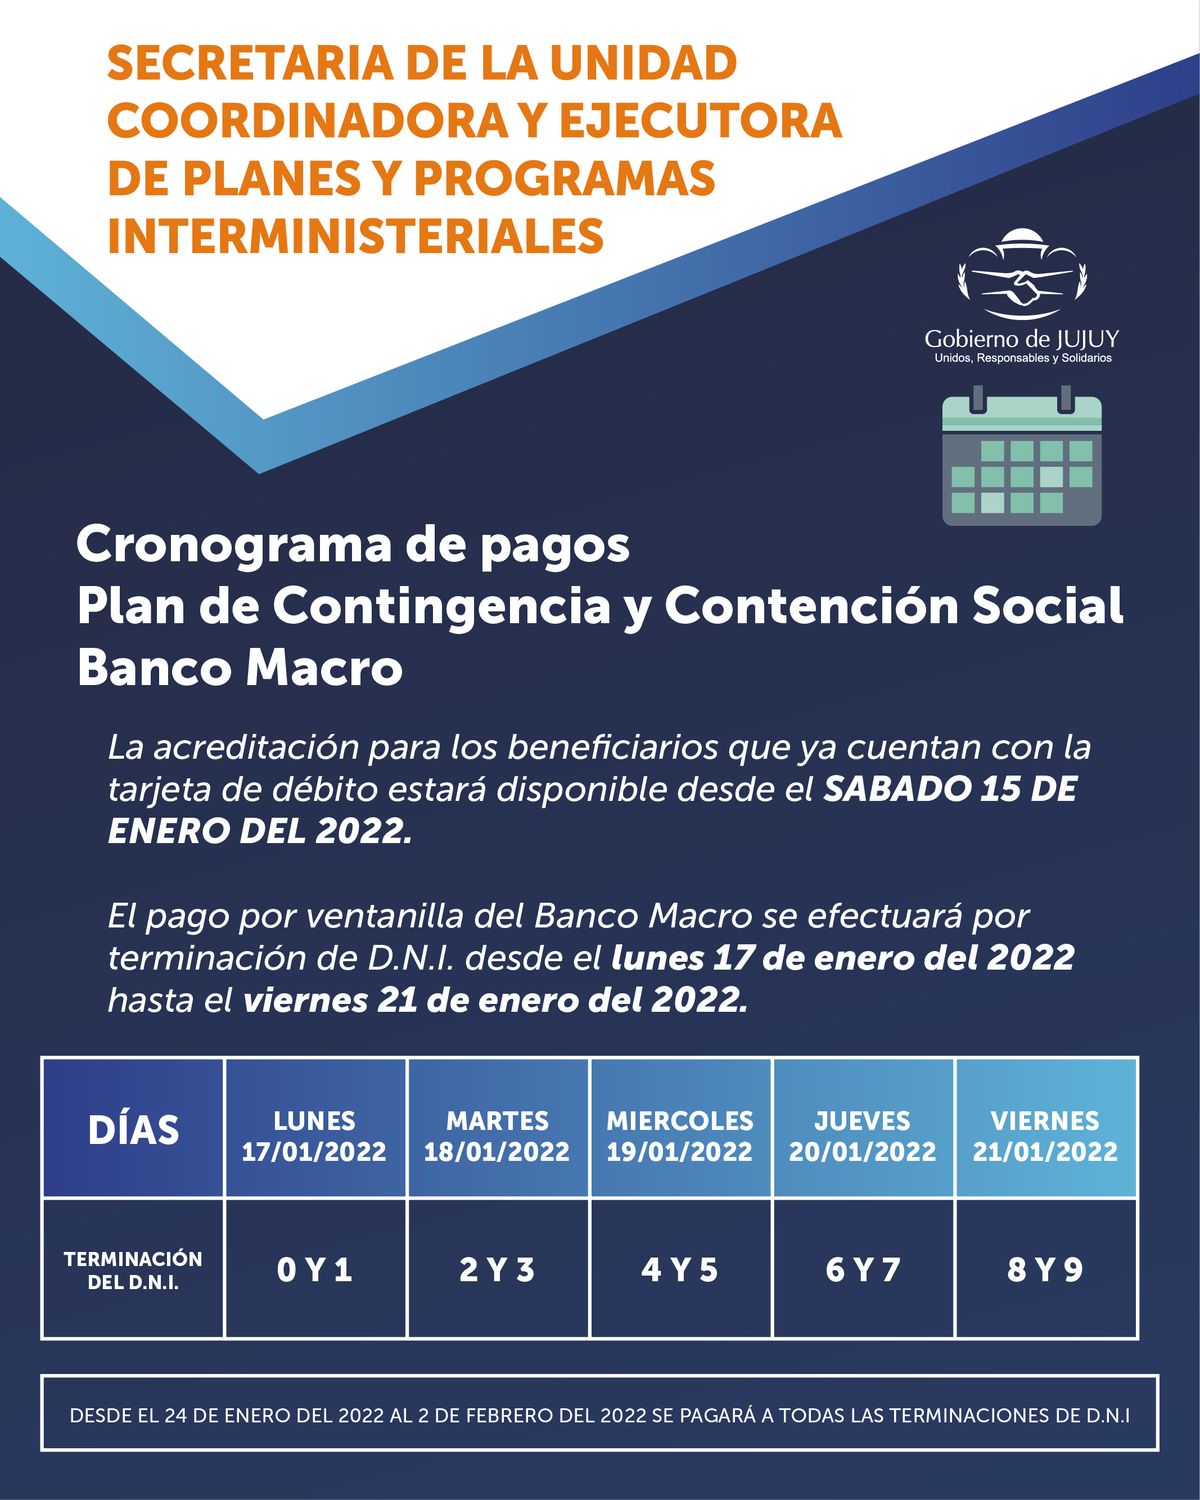 Cronograma de pagos del Plan de Contingencia y de Contención Social